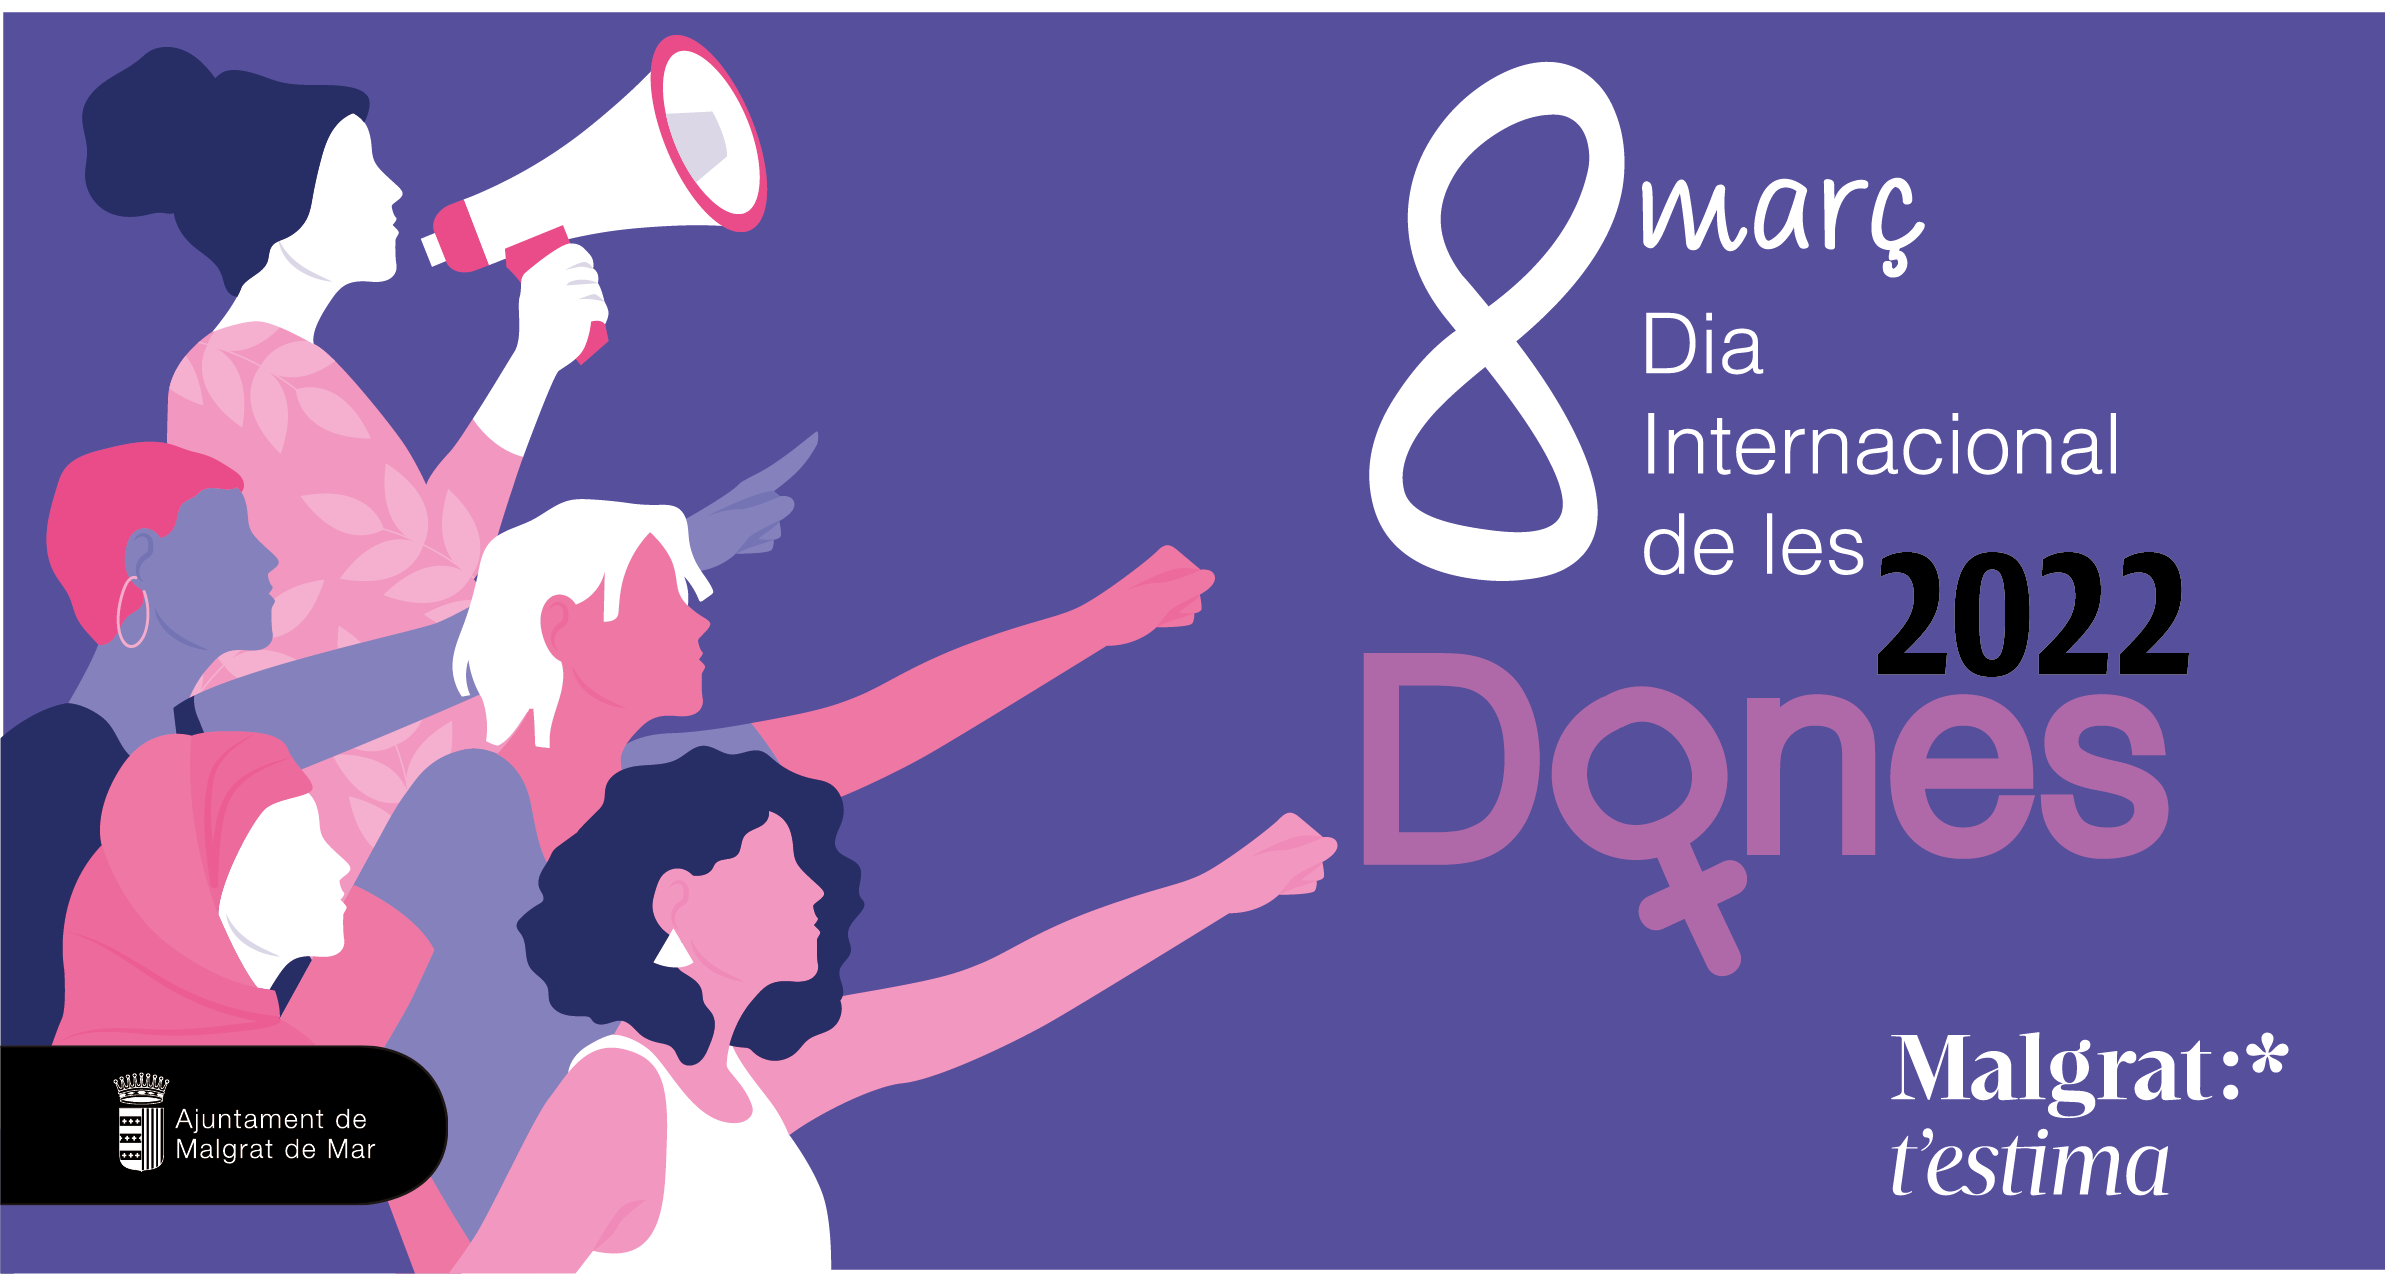 8M Dia Internacional de les Dones: Acte institucional